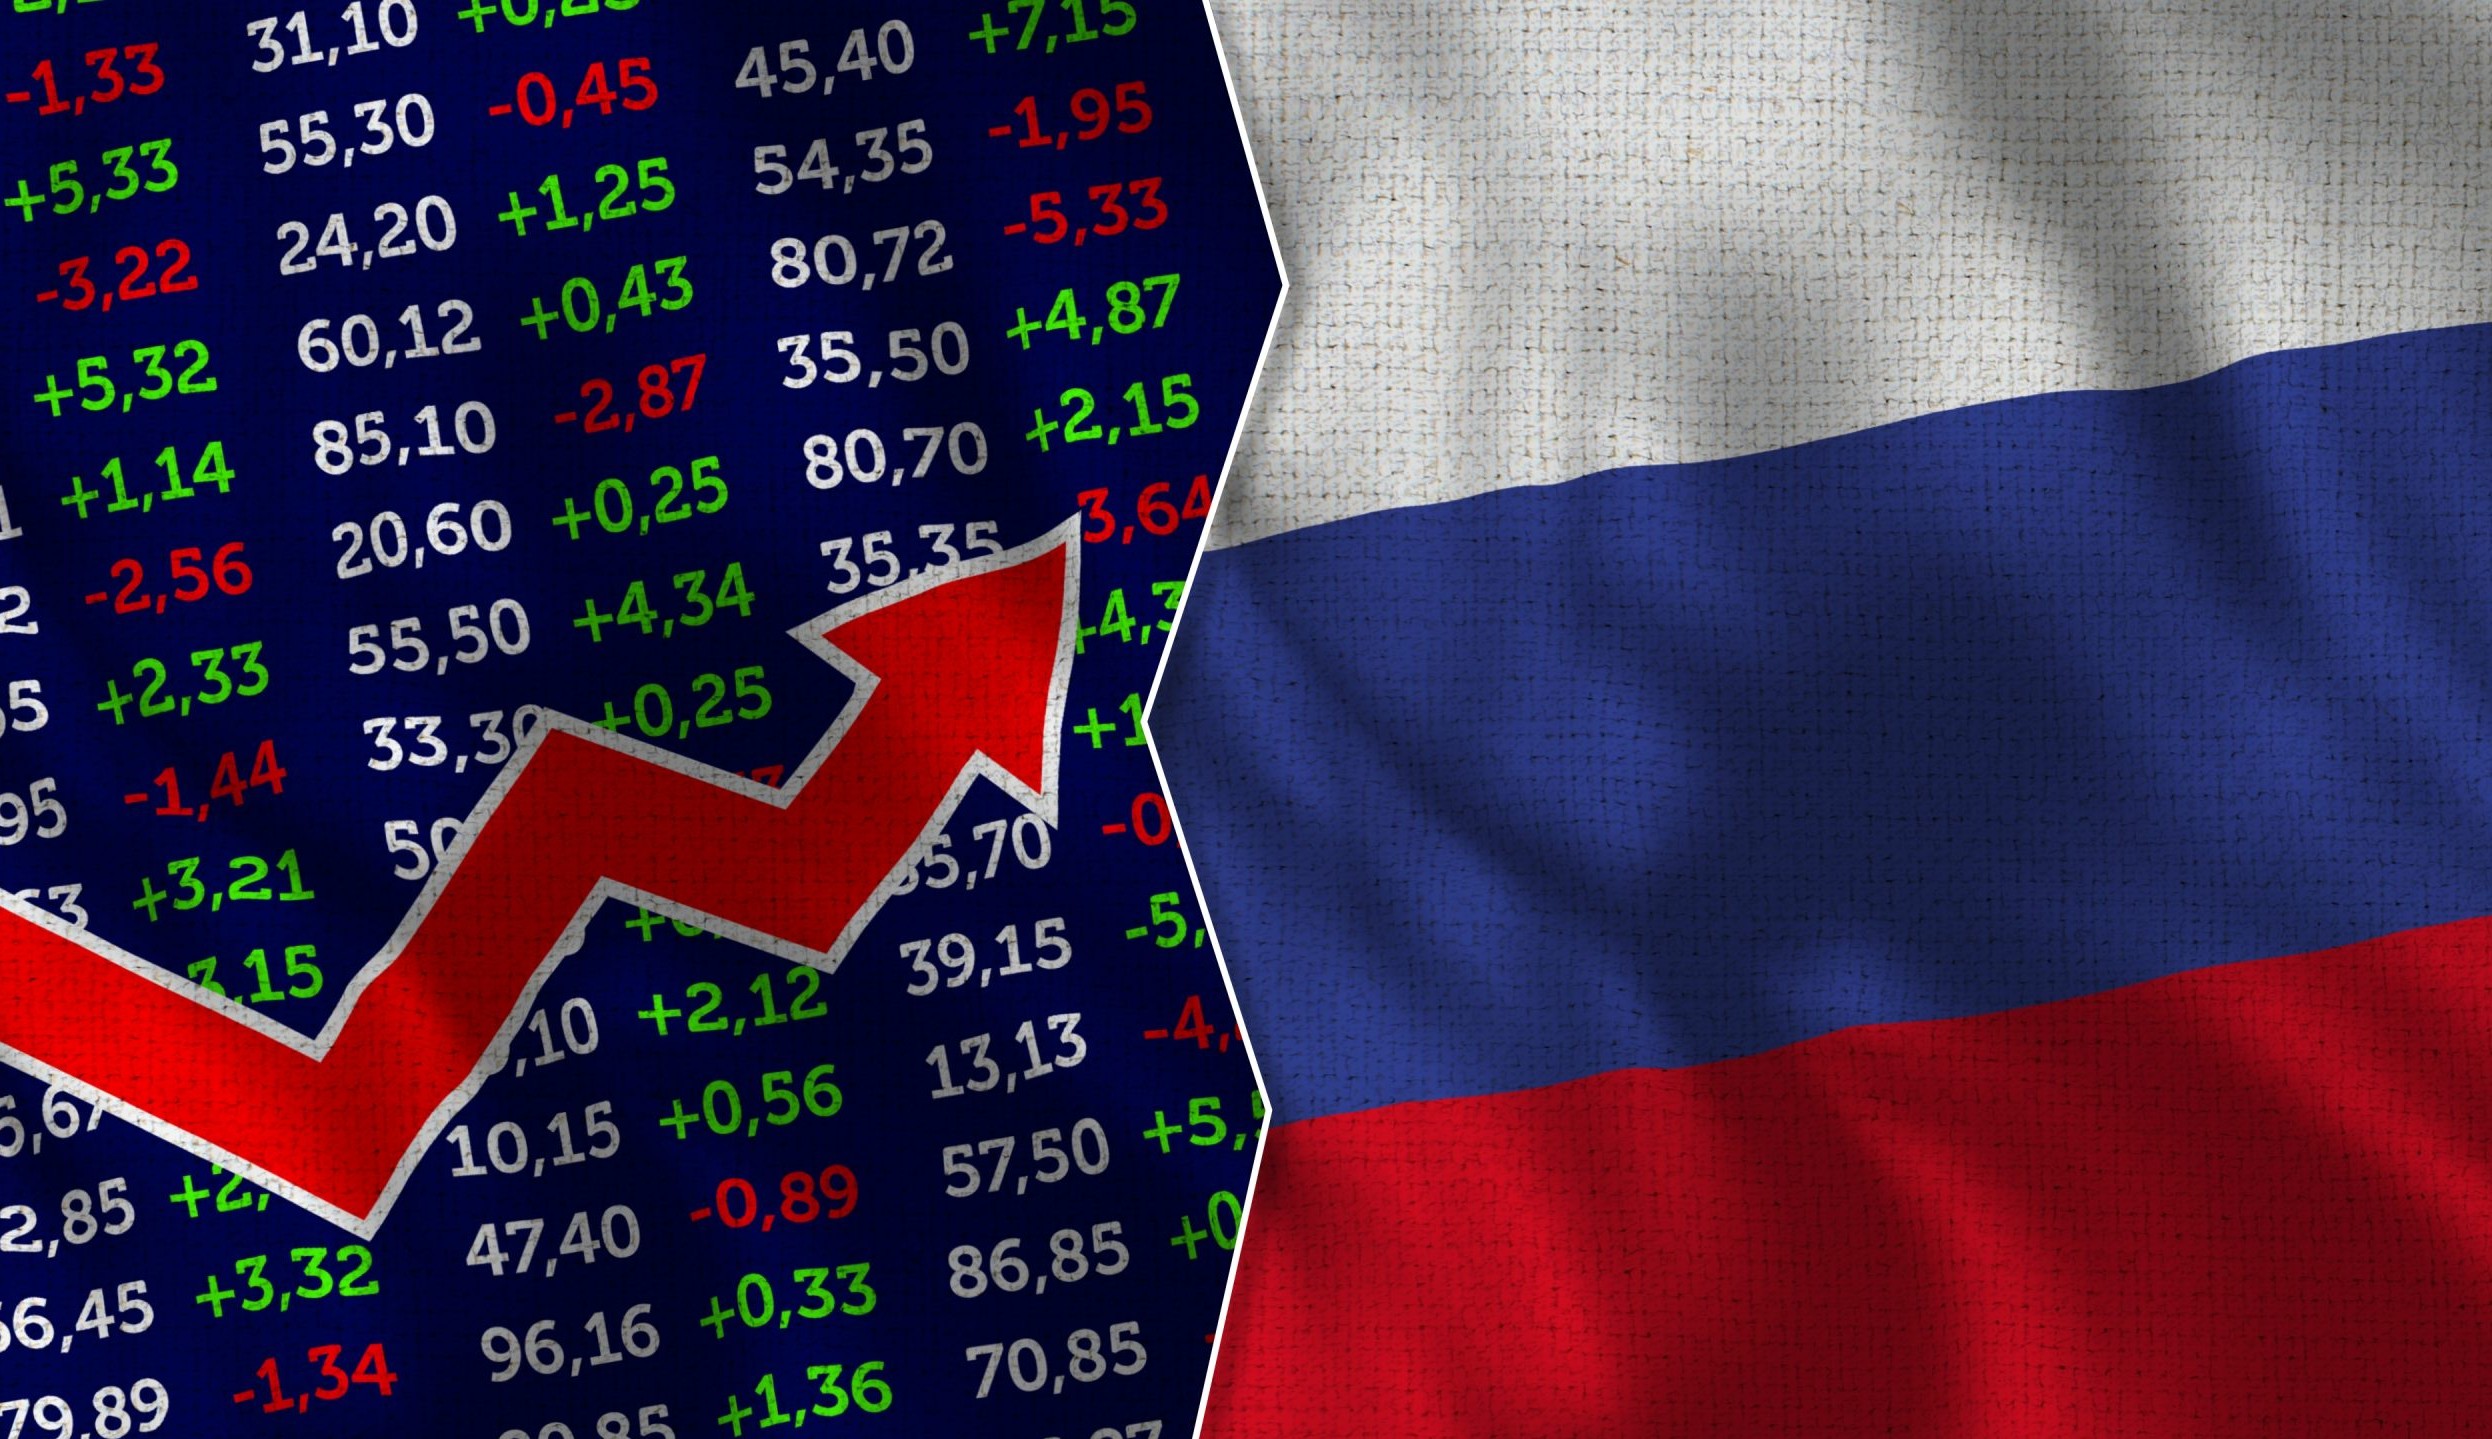 Mercado internacional sofre com tensão geopolítica entre Rússia e Ucrânia nesta terça